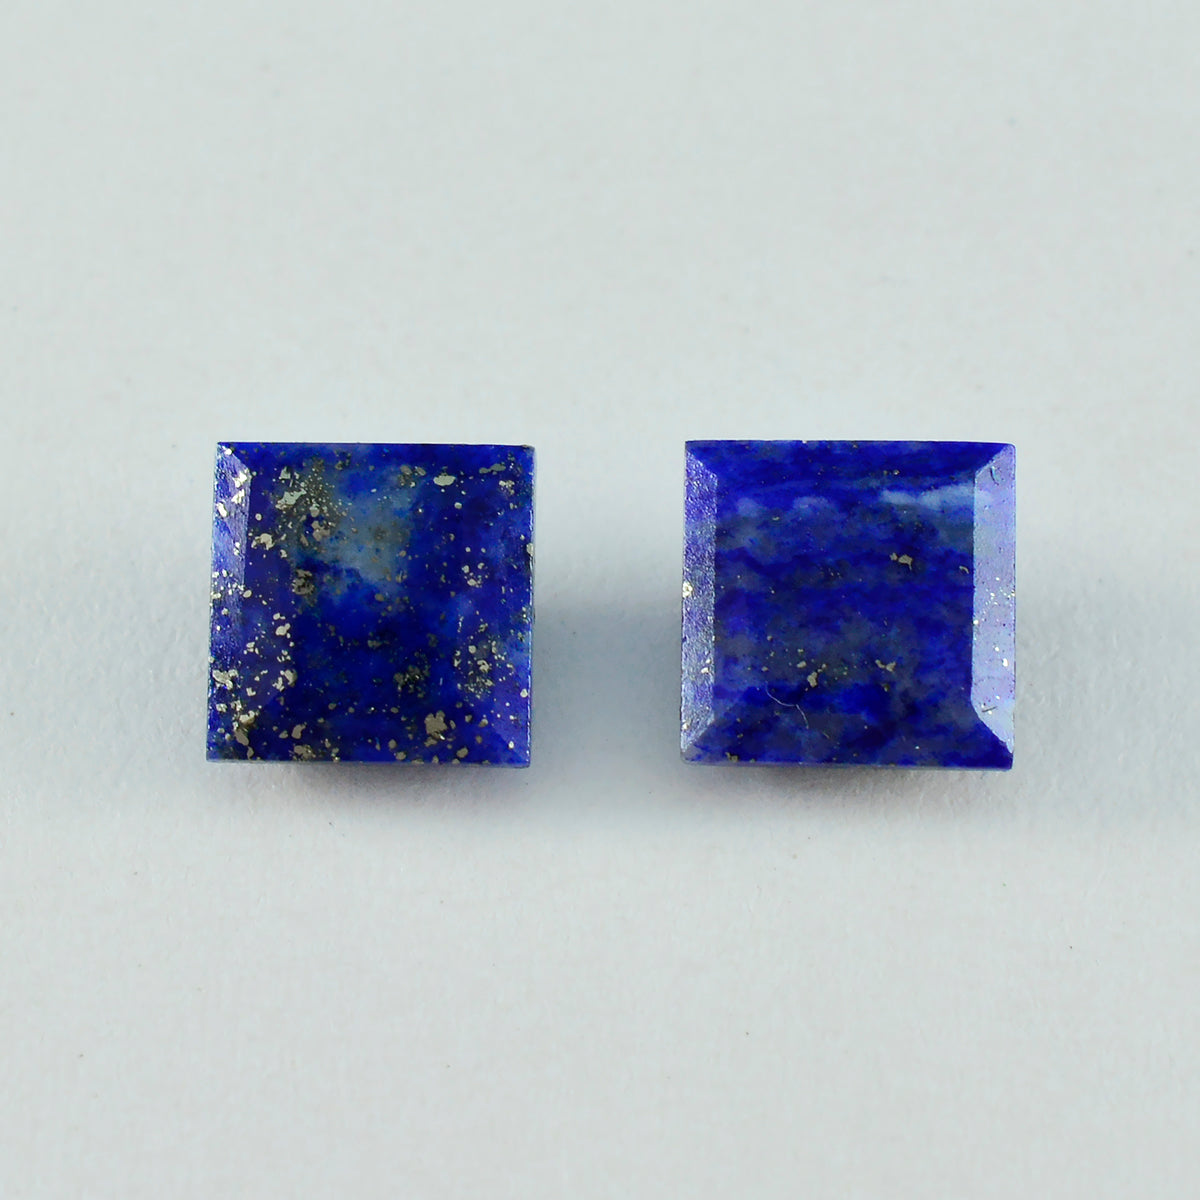 riyogems 1 шт. натуральный синий лазурит ограненный 11x11 мм квадратной формы красивые качественные свободные драгоценные камни